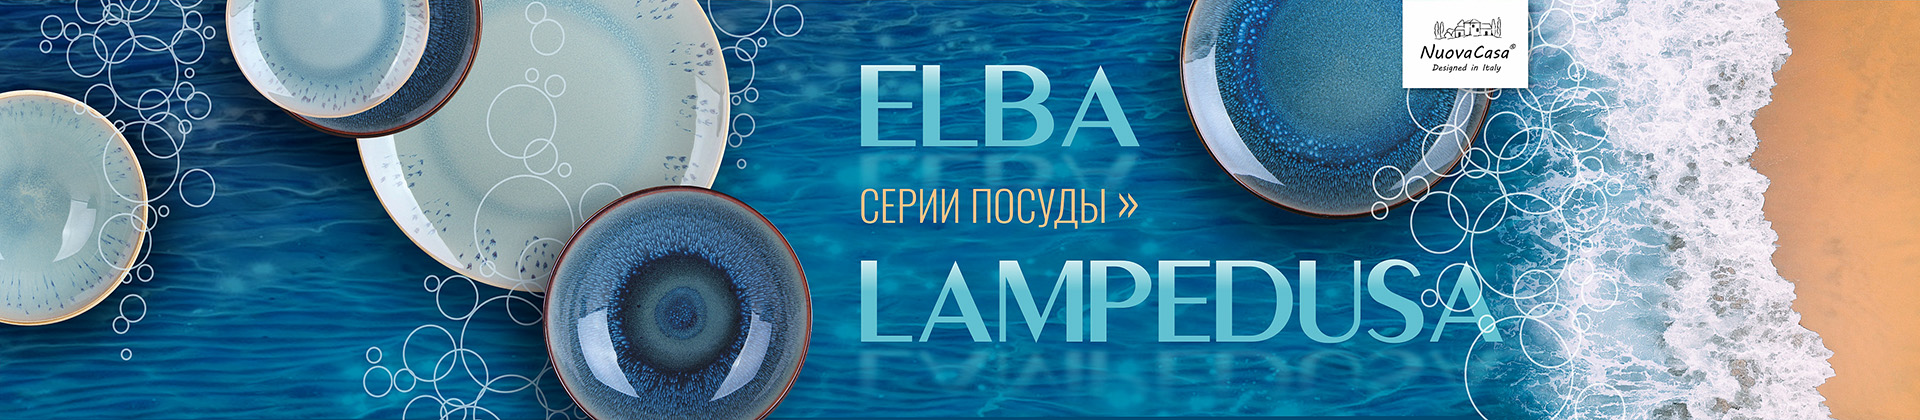 керамическая посуда_Elba и Lampedusa